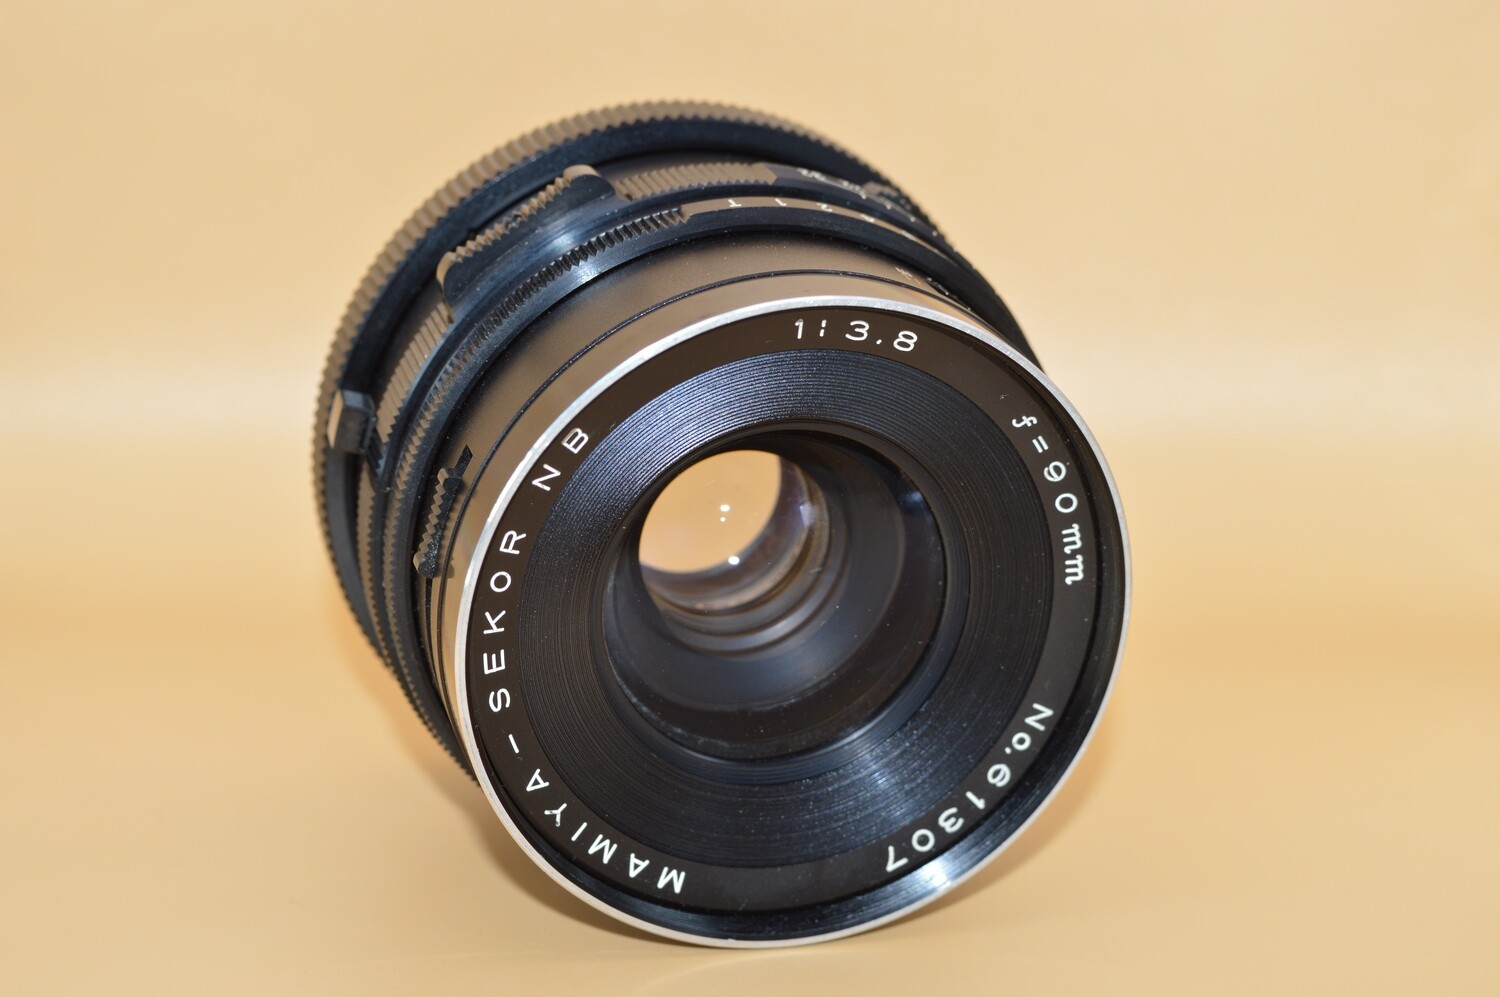 Mamiya Sekor NB 1:3.8 90mm Lens for parts or repairs